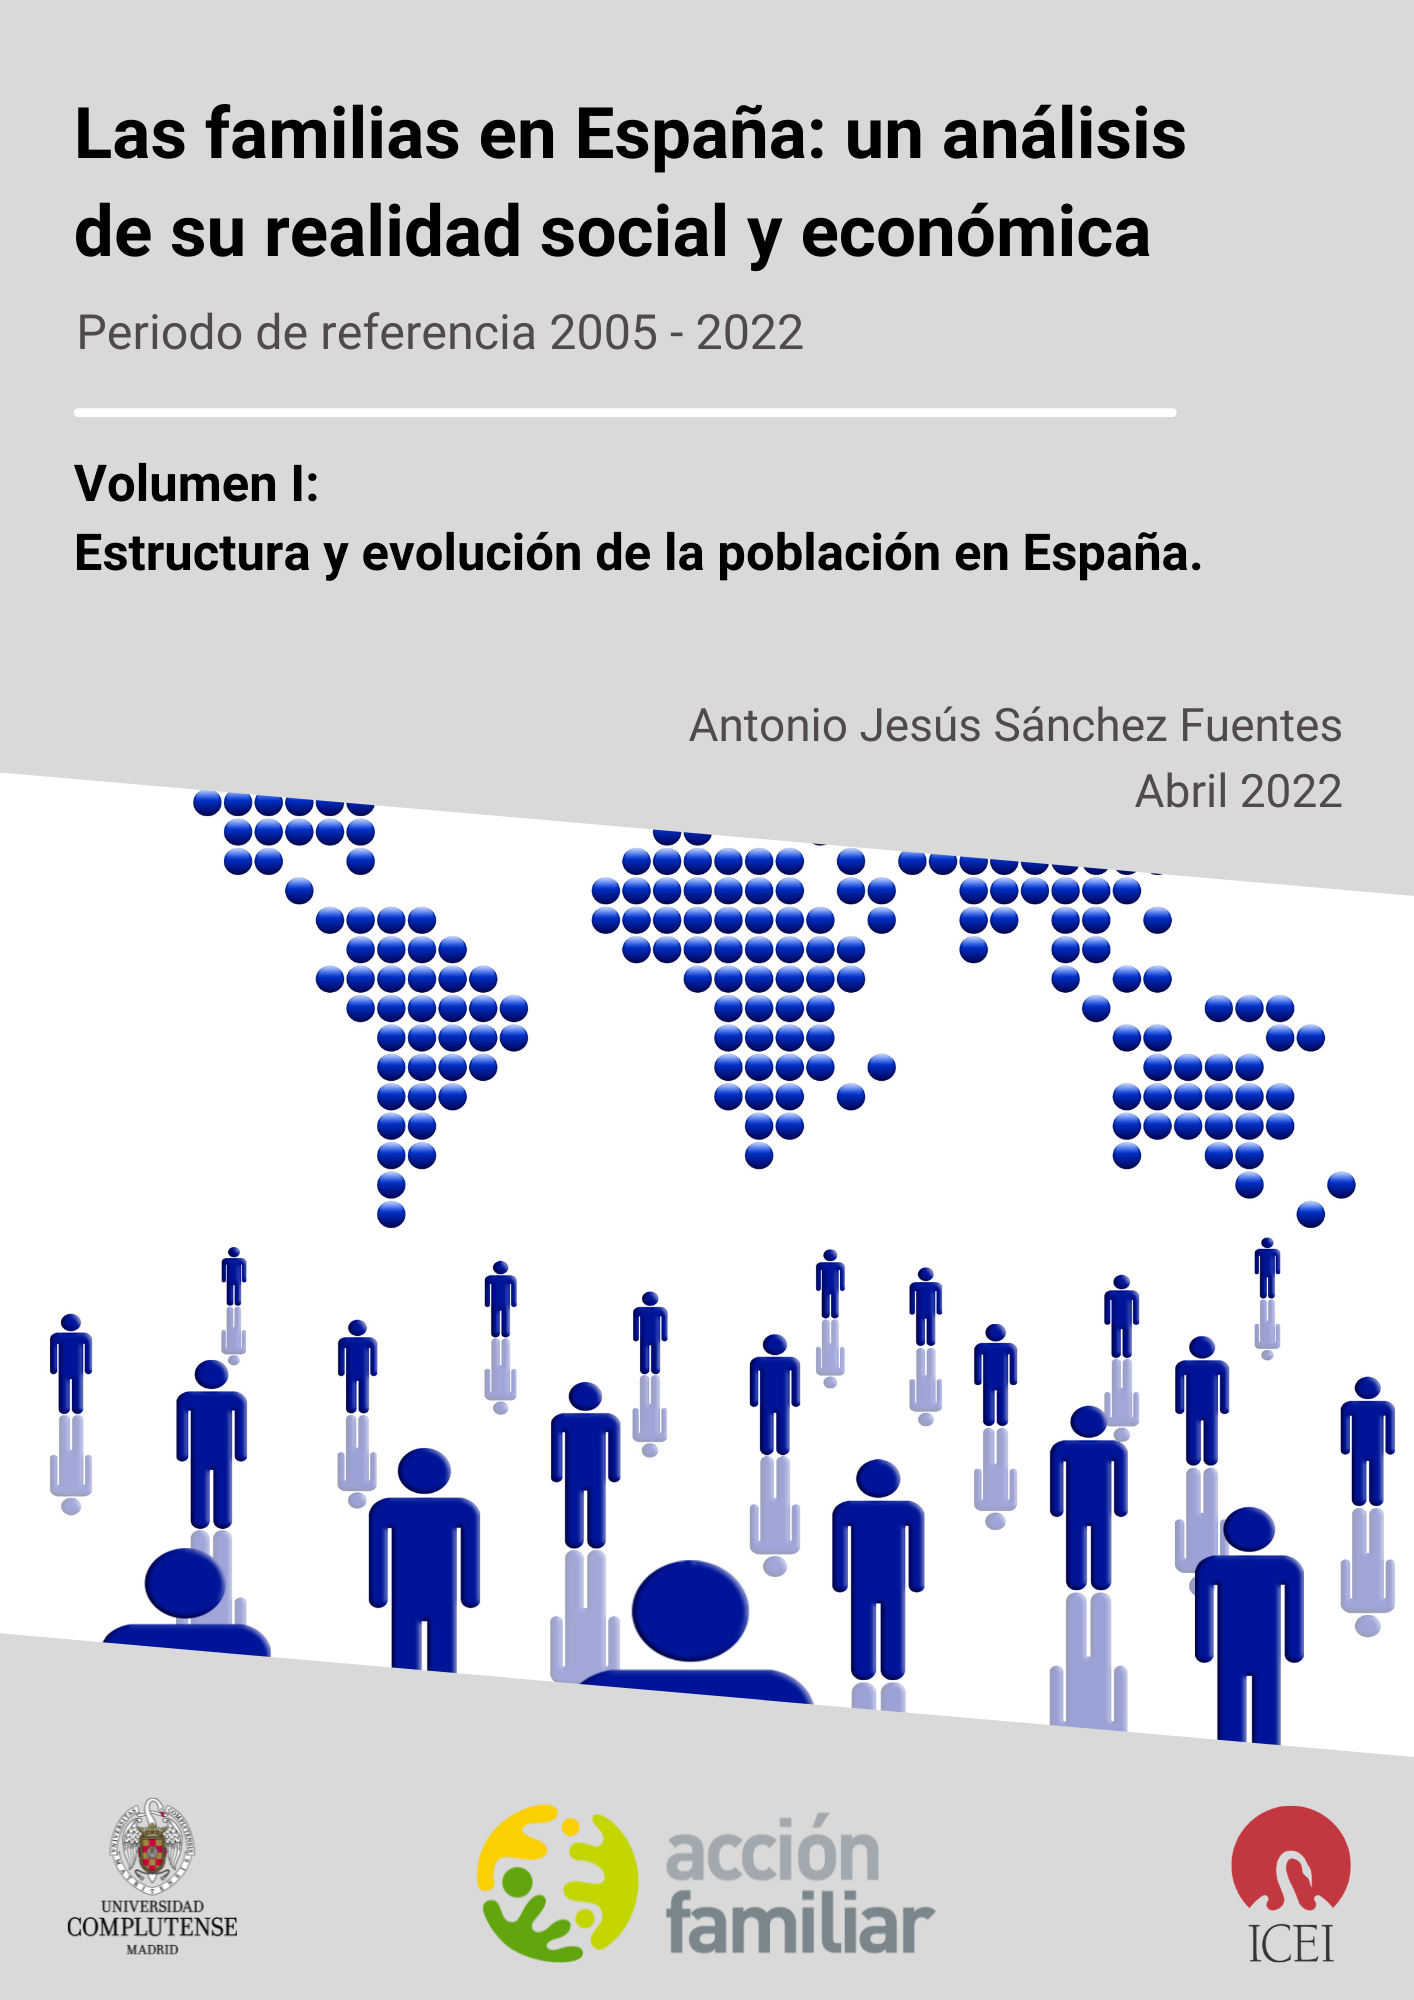  Estructura y evolución de la población en España.